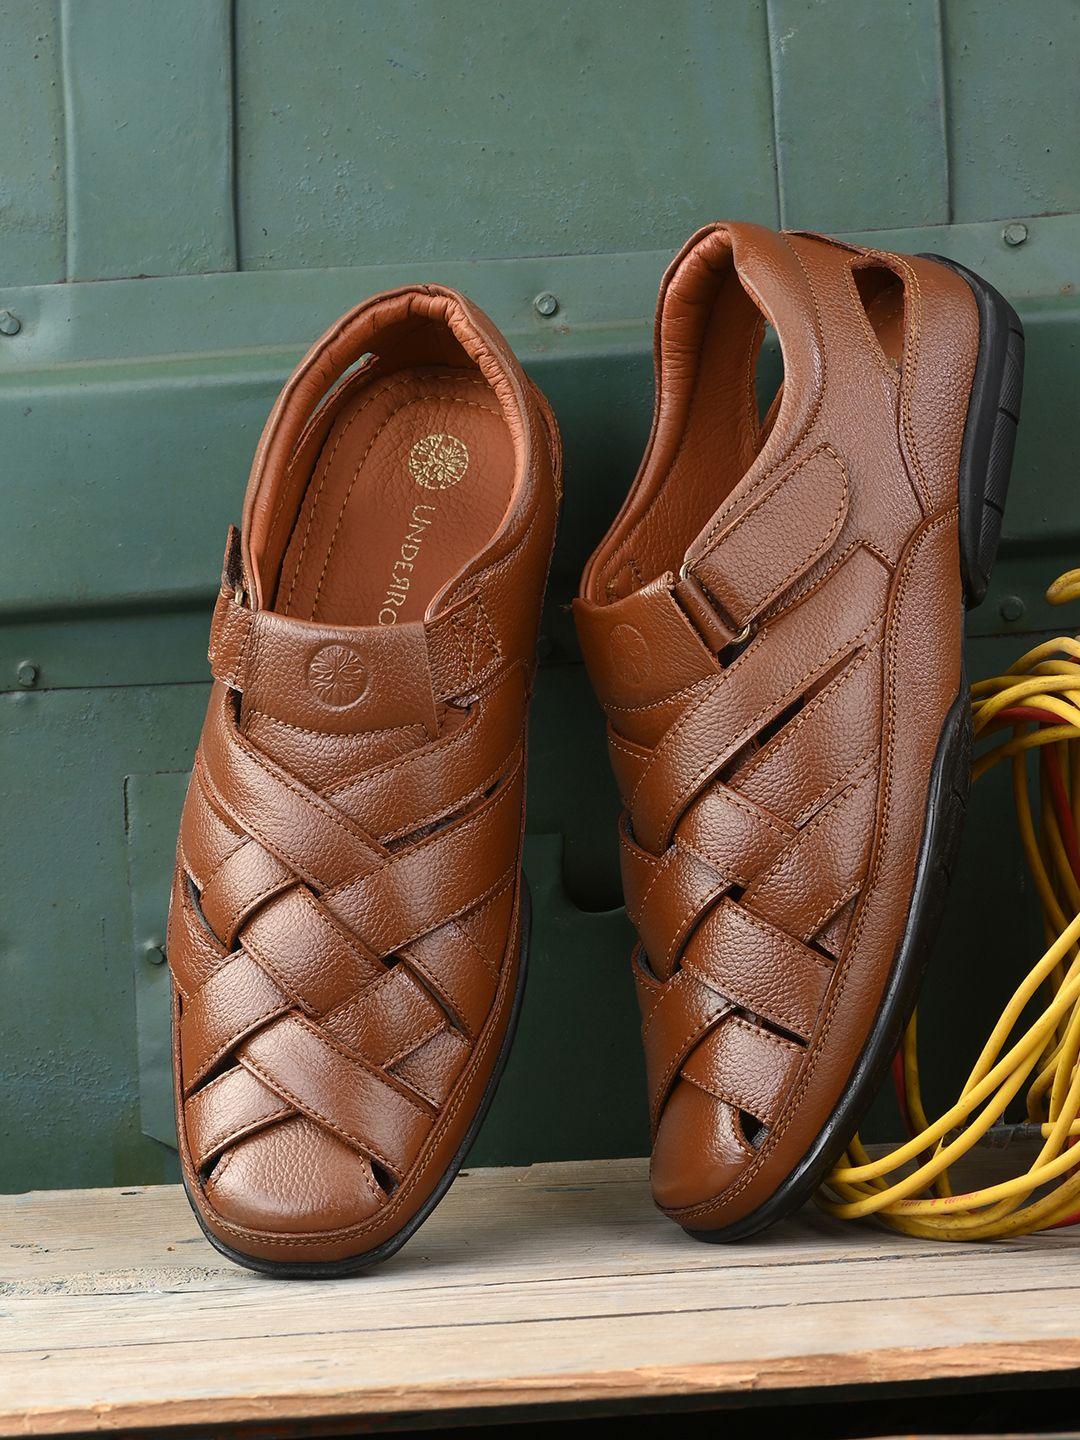 underroute-men-tan-solid-leather-shoe-style-sandals